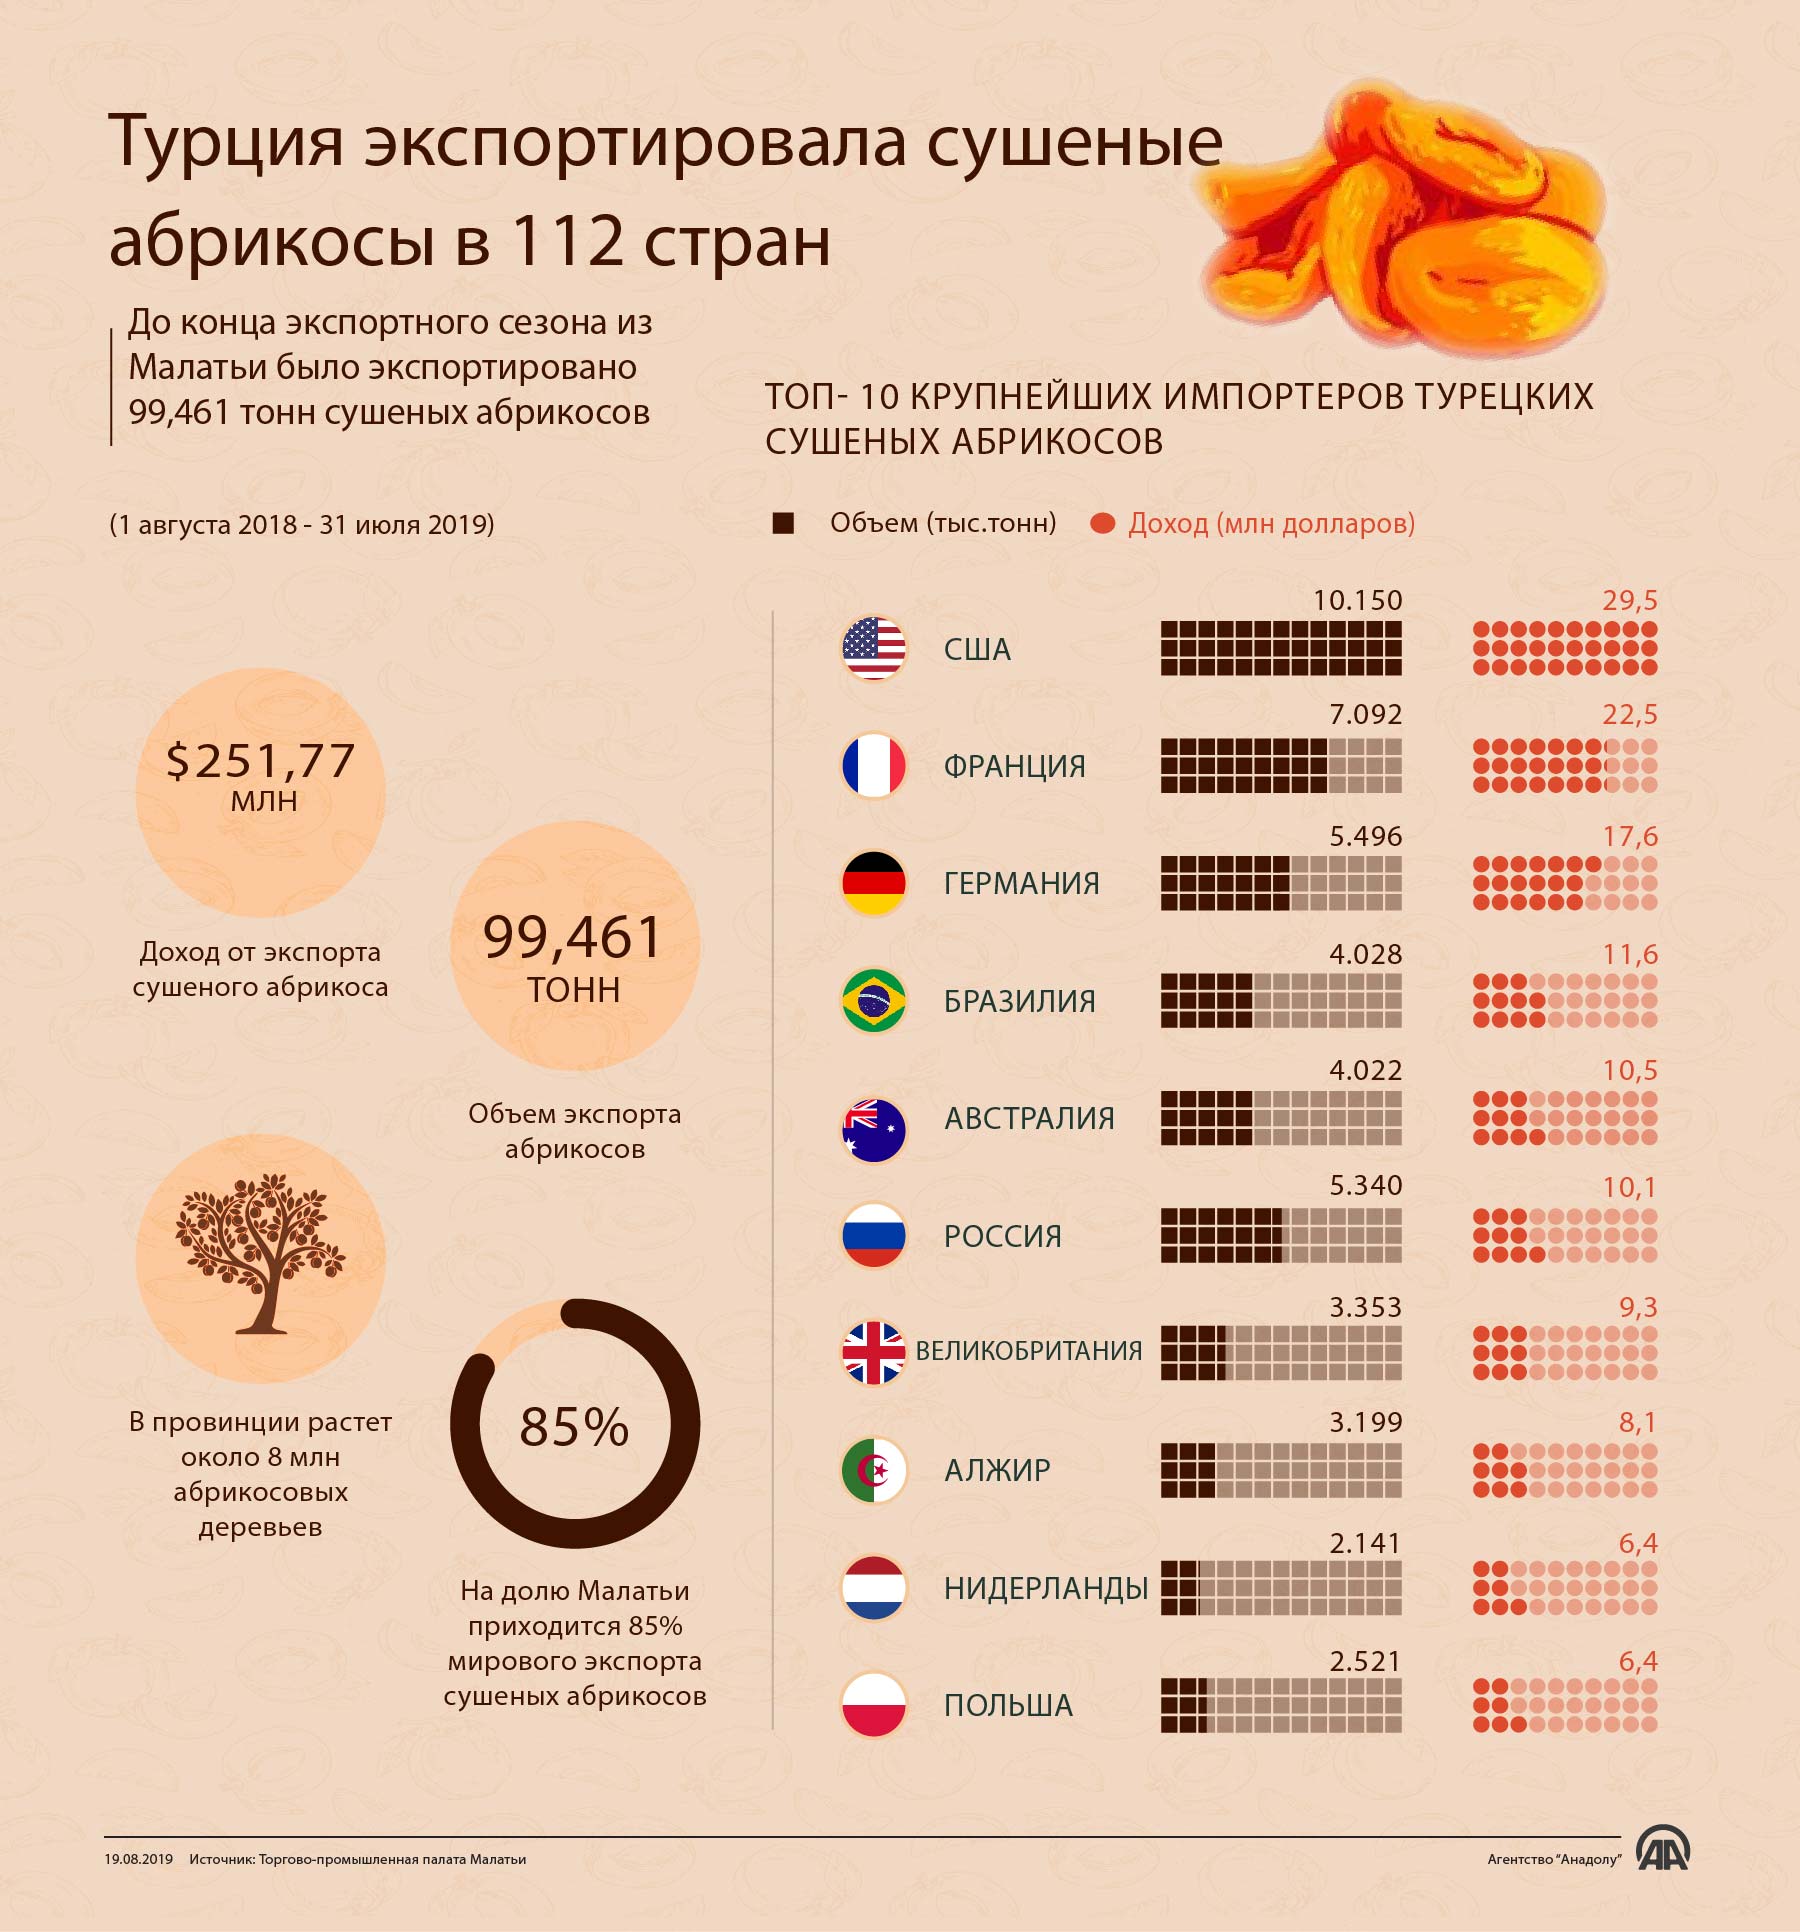 Турция экспортировала сушеные абрикосы в 112 стран